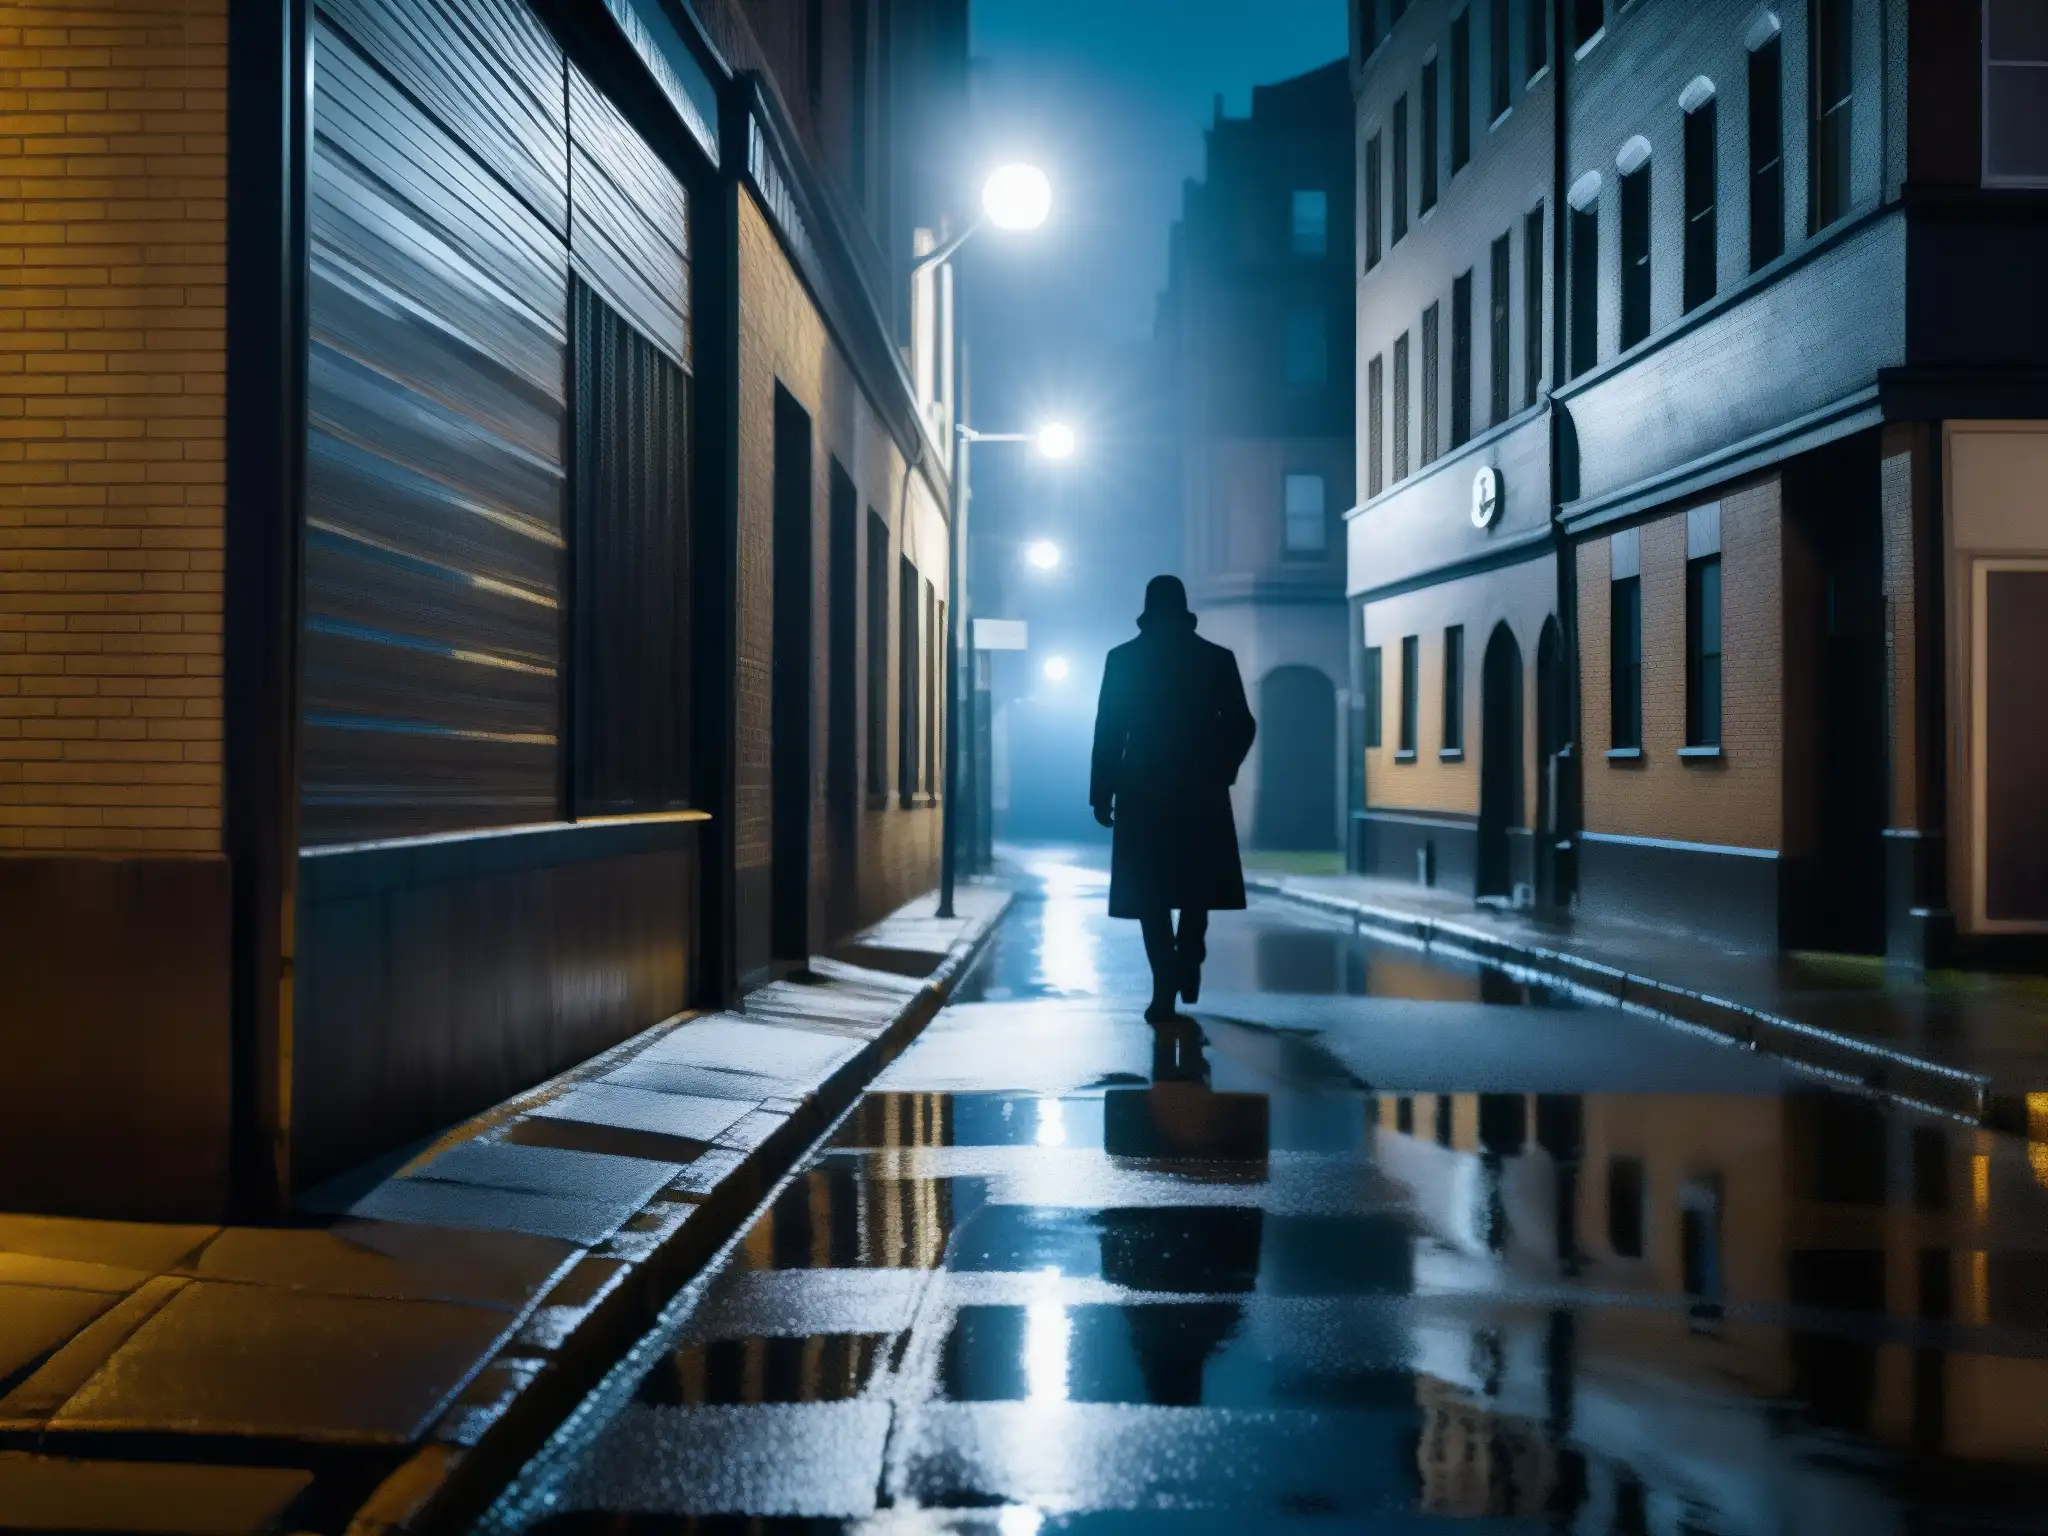 Un callejón urbano sombrío de noche con figuras misteriosas y una sola persona caminando con cautela